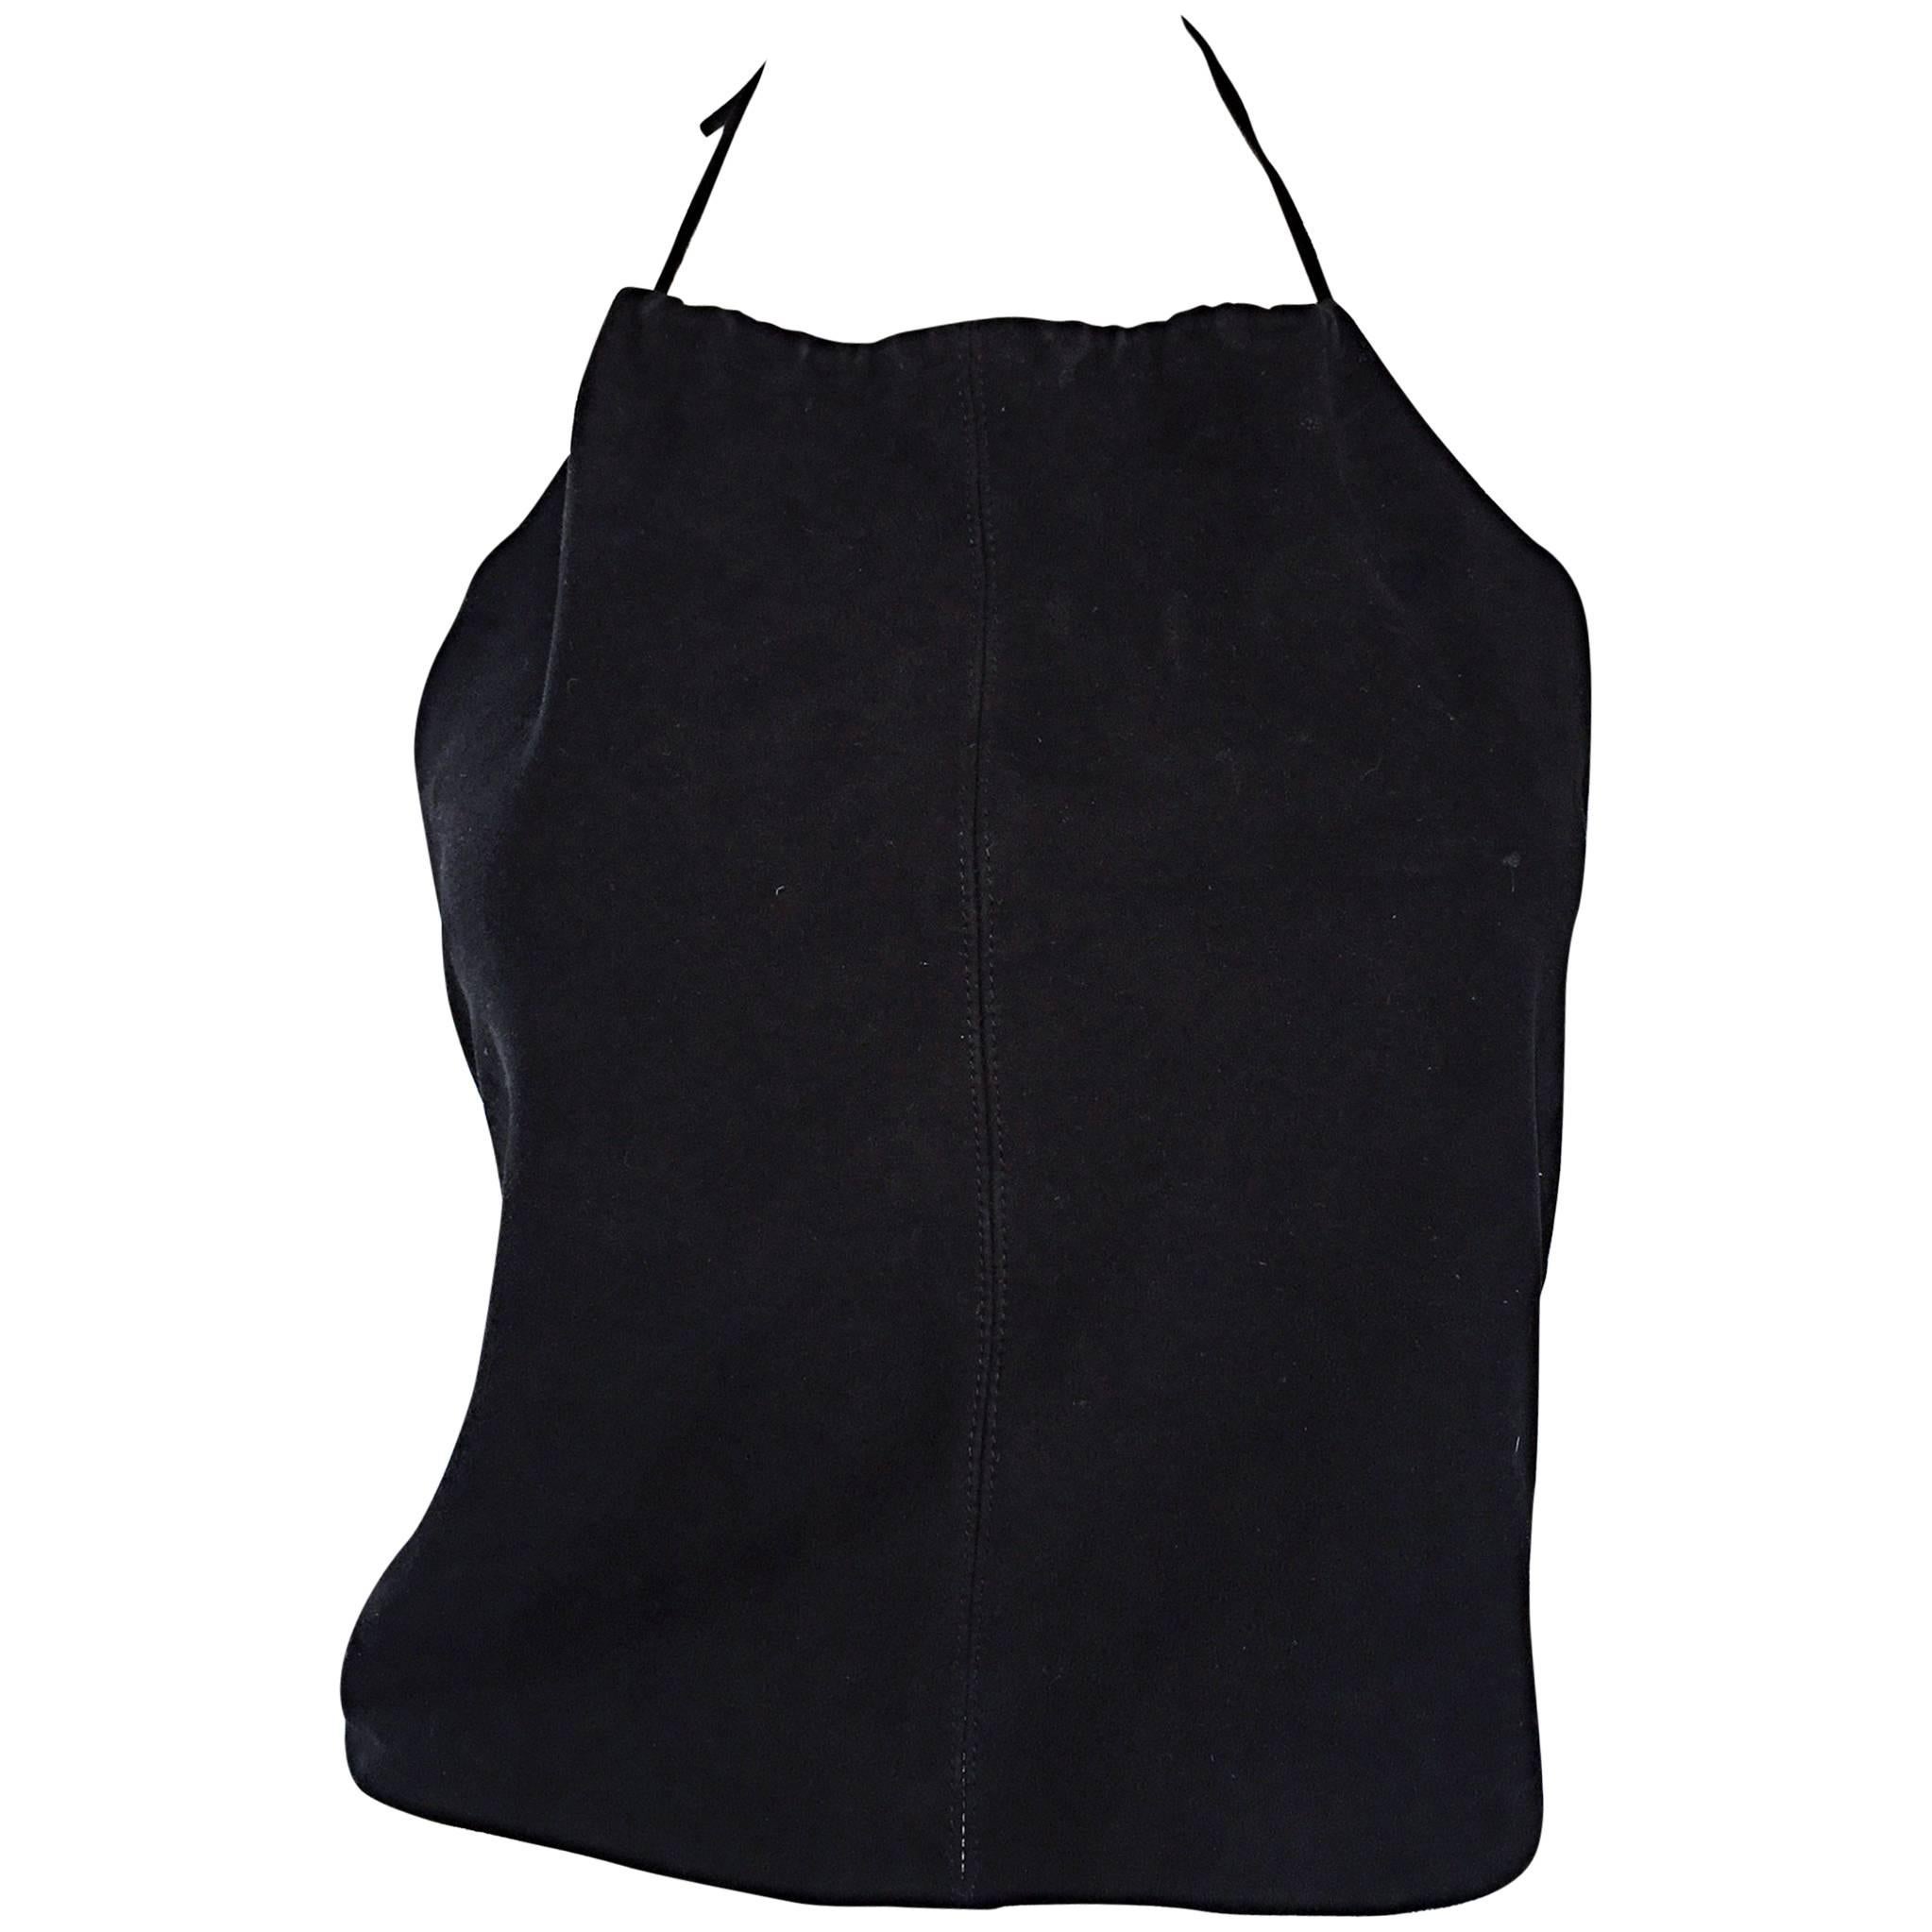 Gemma Kahng Vintage 1990s Black Suede Leather 90s Cropped Halter Top Shirt For Sale